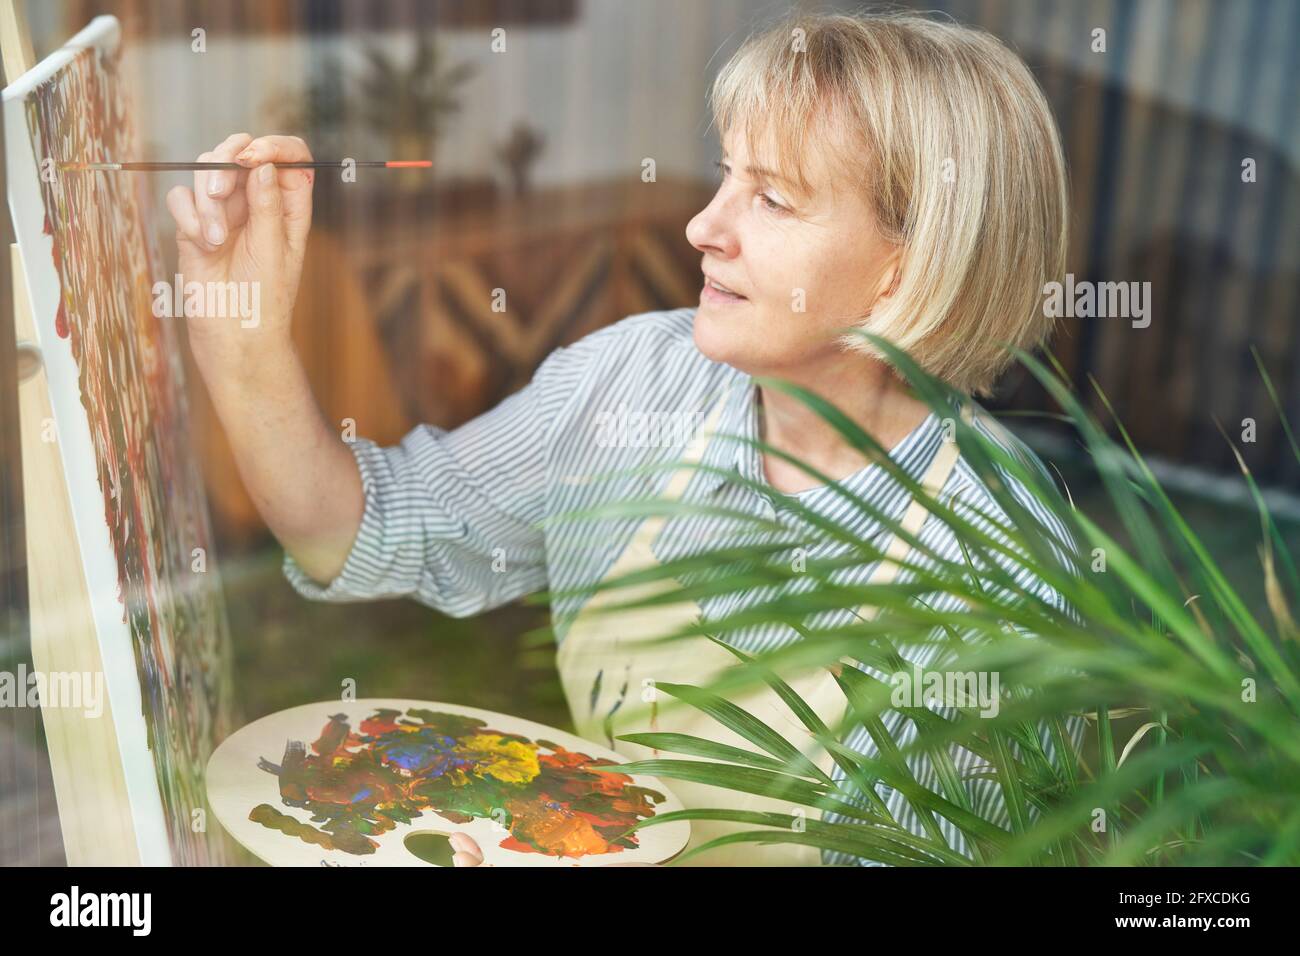 Reife Frau mit blonden Haaren auf Staffelei zu Hause malen Stockfoto